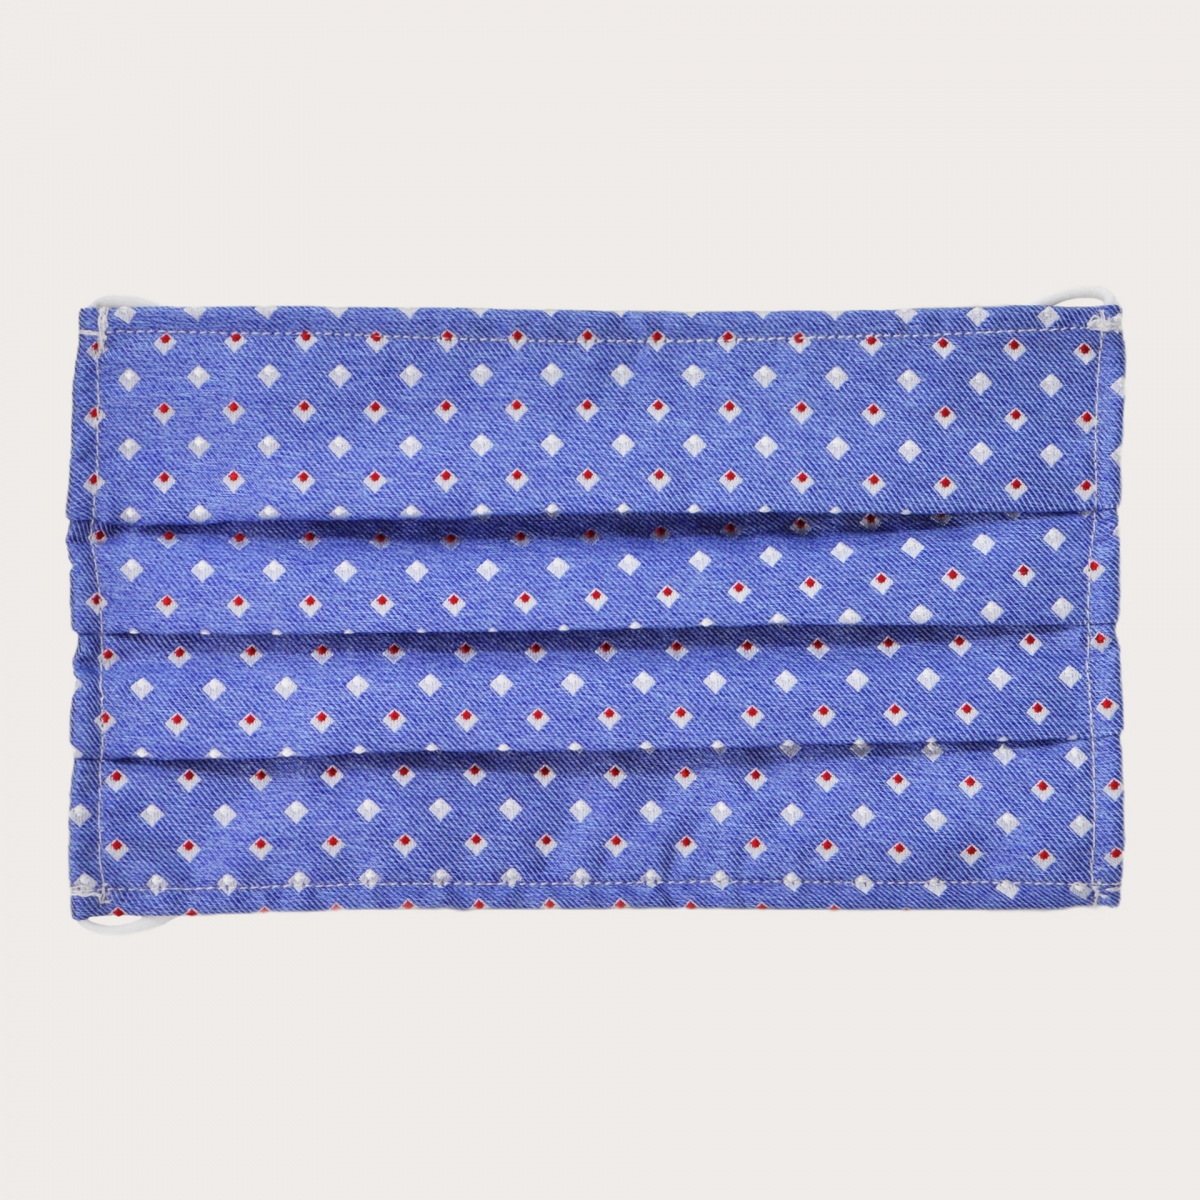 Mascarilla lavable StyleMask en seda, motivo azul claro con cuadrados